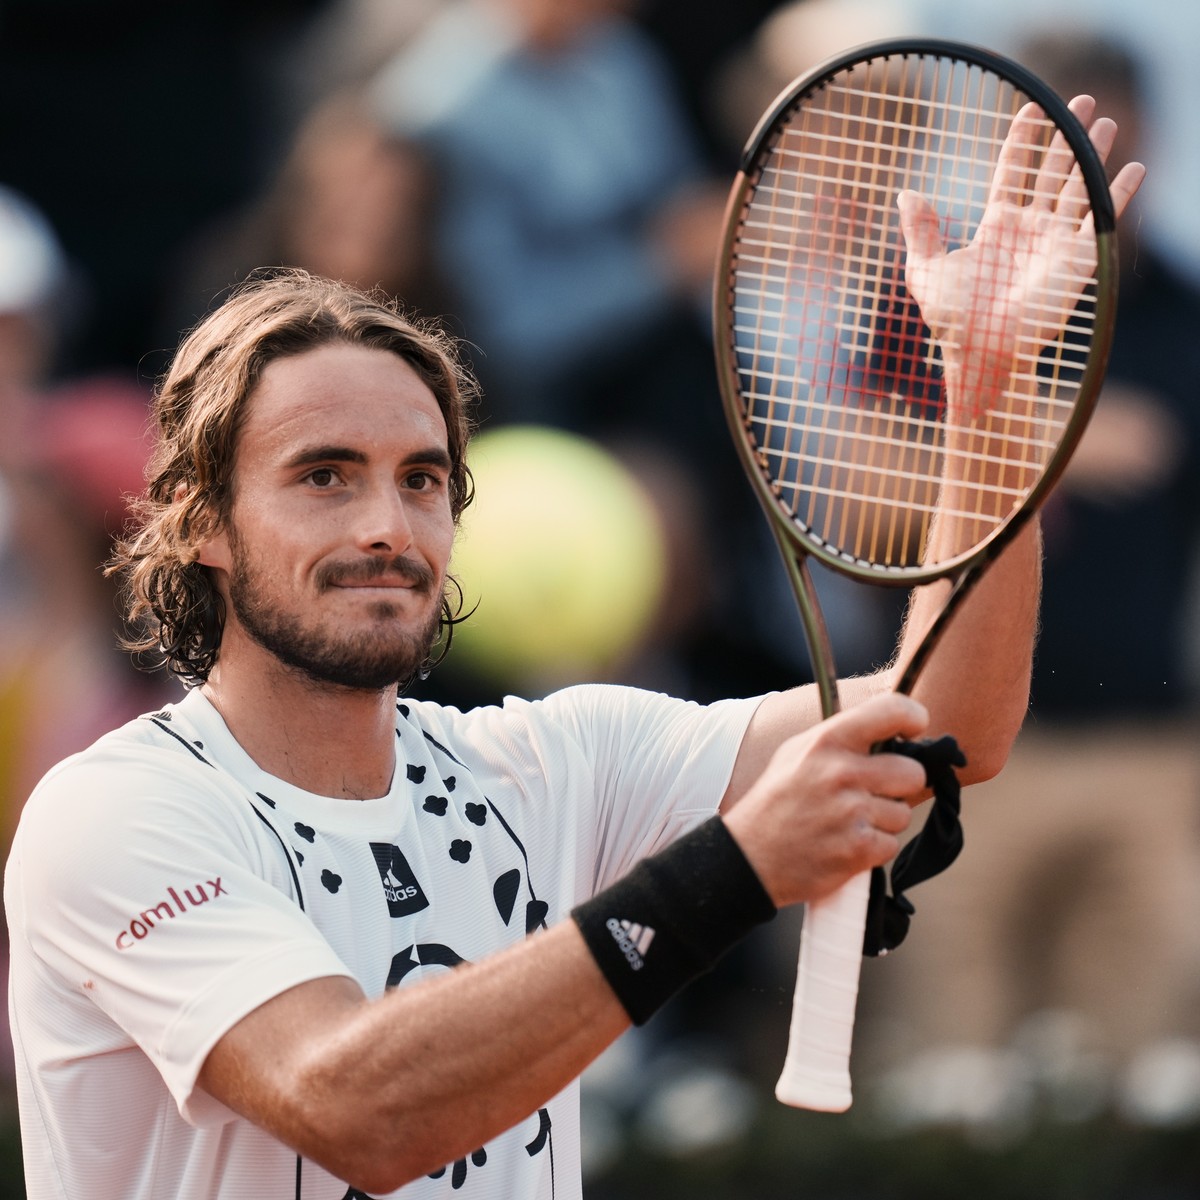 French Open Das wichtigste von Tag 7 bei Roland Garros im Liveticker